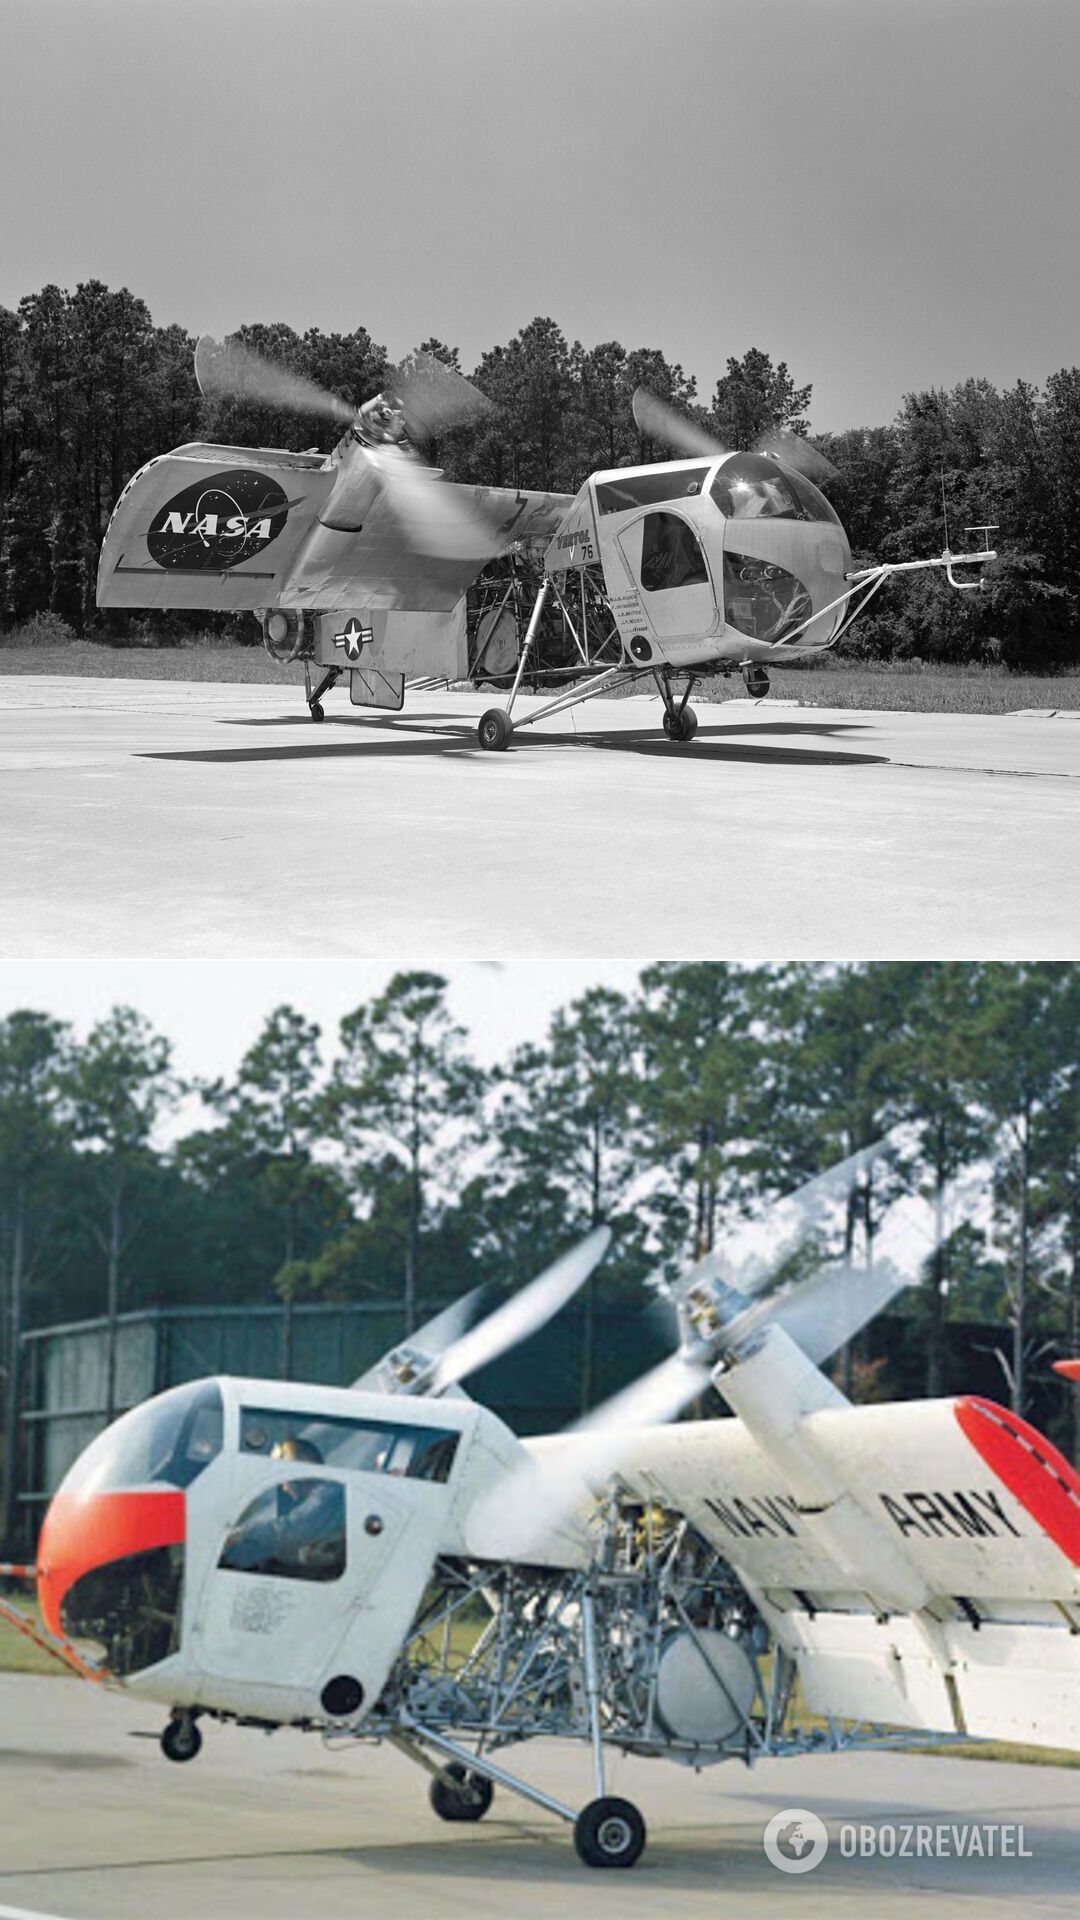 Oeing Vertol VZ-2 – первый в мире летательный аппарат, использующий концепцию поворотного крыла, с вертикальным/укороченным взлетом и посадкой. Первый полет с зависанием в воздухе был совершен VZ-2 летом 1957 года. После серии успешных испытаний аппарат передали в исследовательский центр NASA в начале 60-х